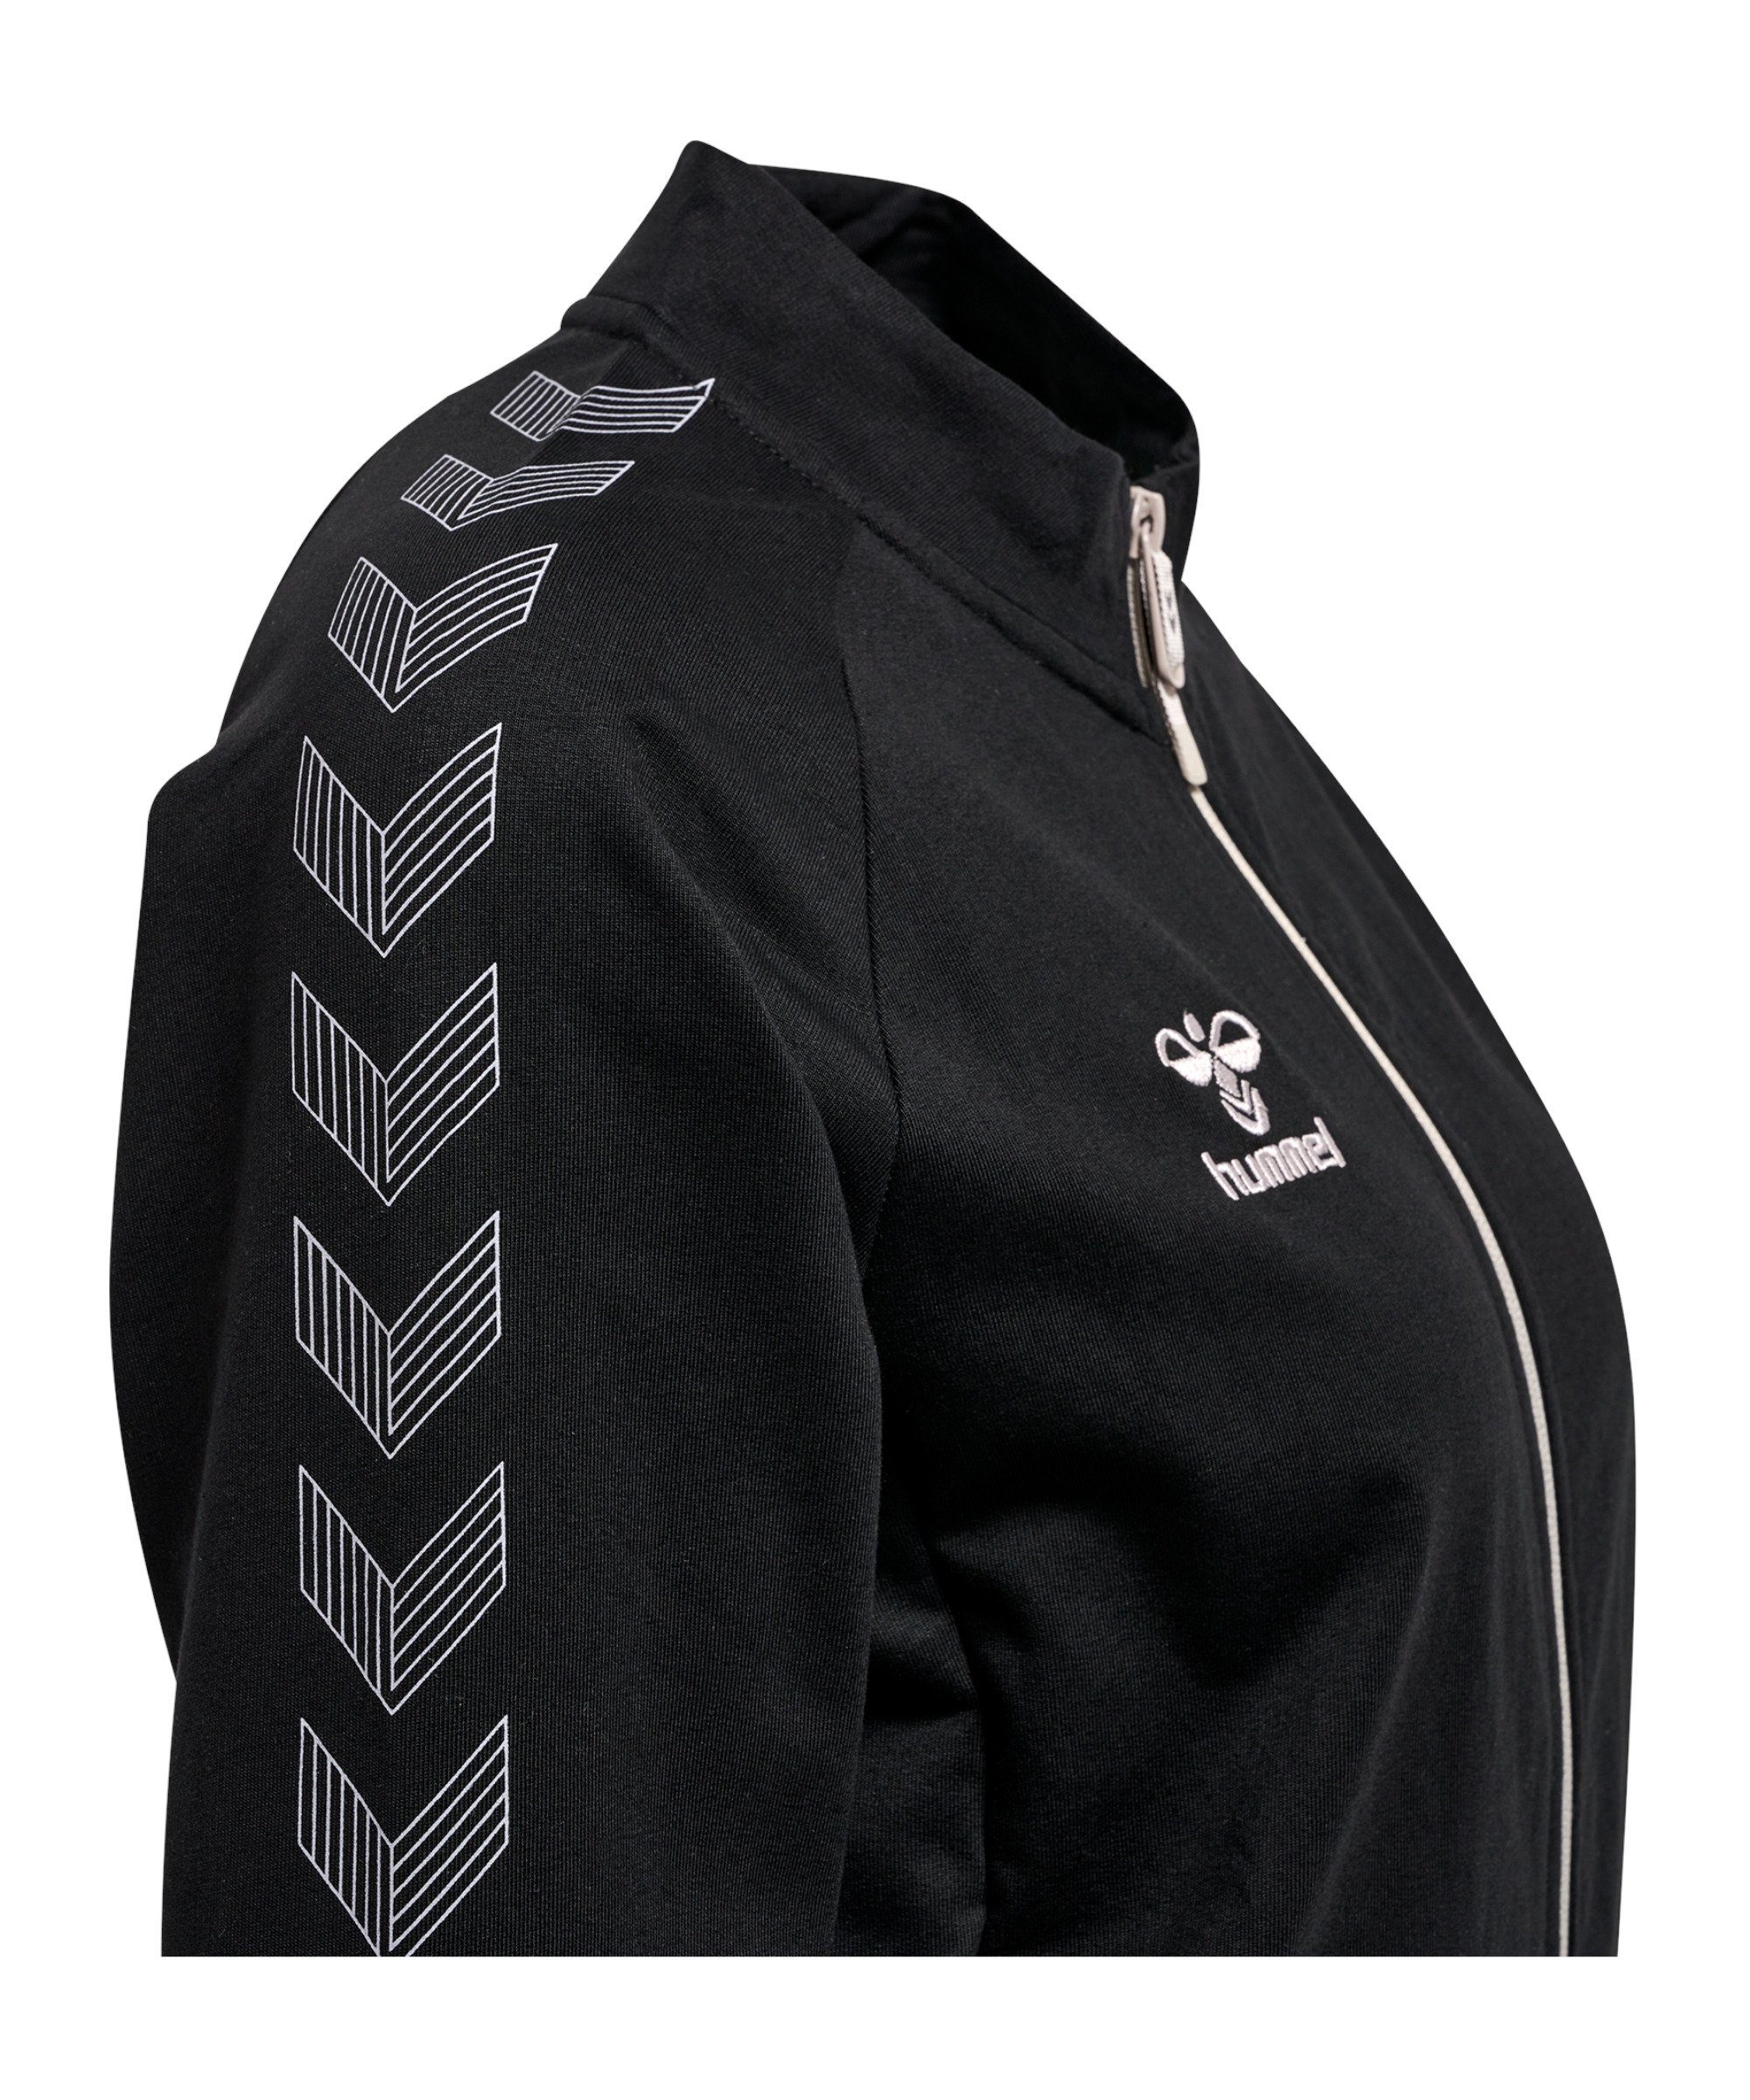 Schwarz Grid Jacke hmlMOVE Zip hummel Trainingsjacke Damen